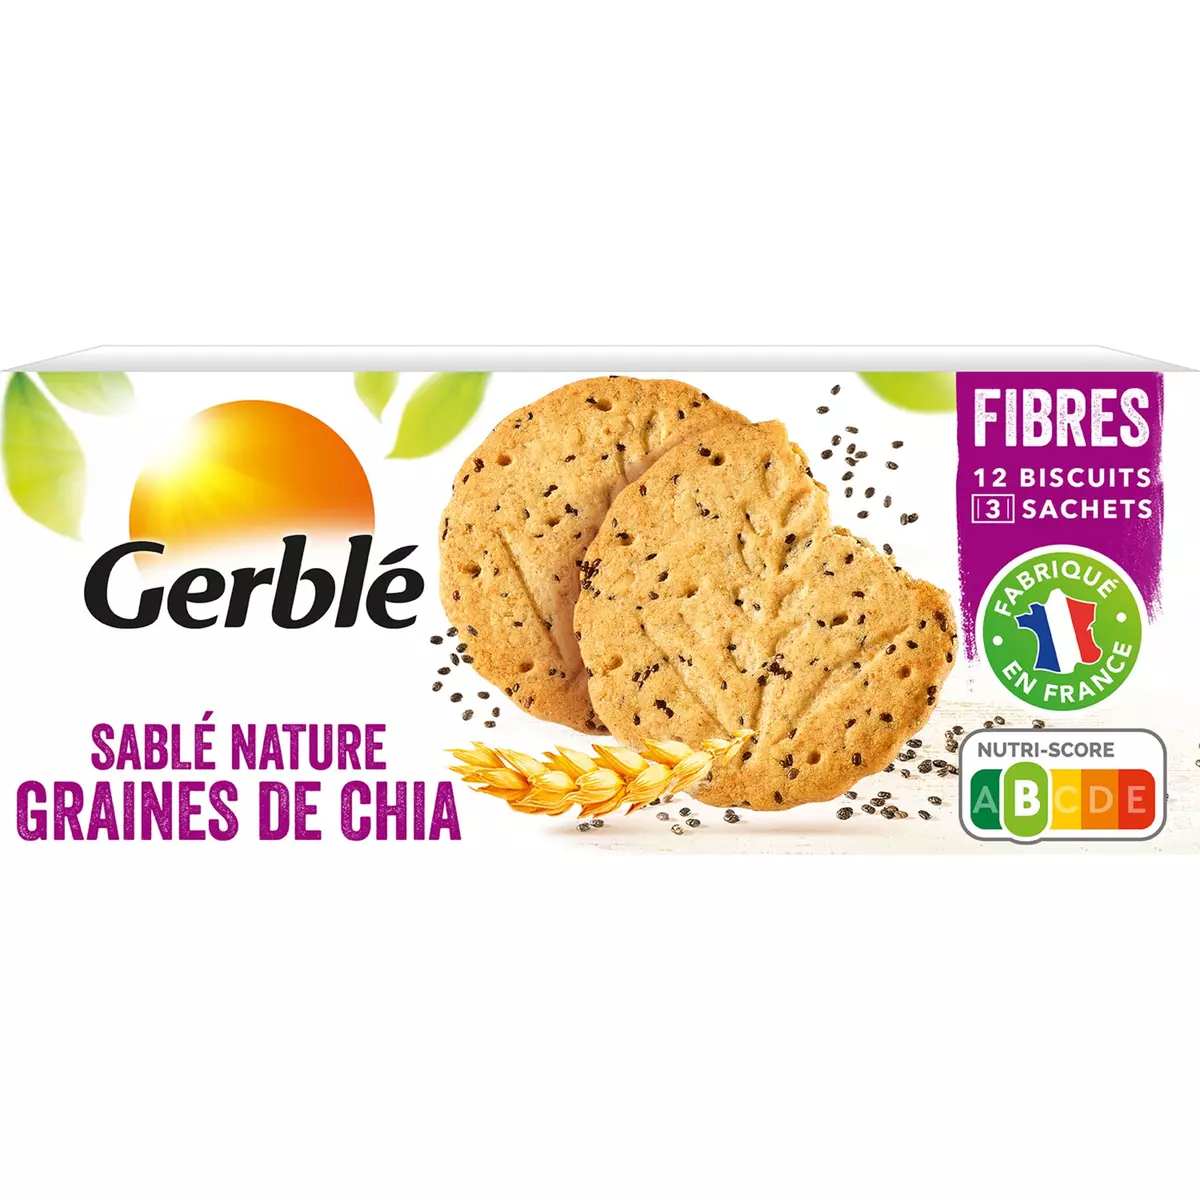 GERBLE Biscuits sablés nature graines de chia ss huile de palme, sachets fraîcheur 3x4 biscuits 132g